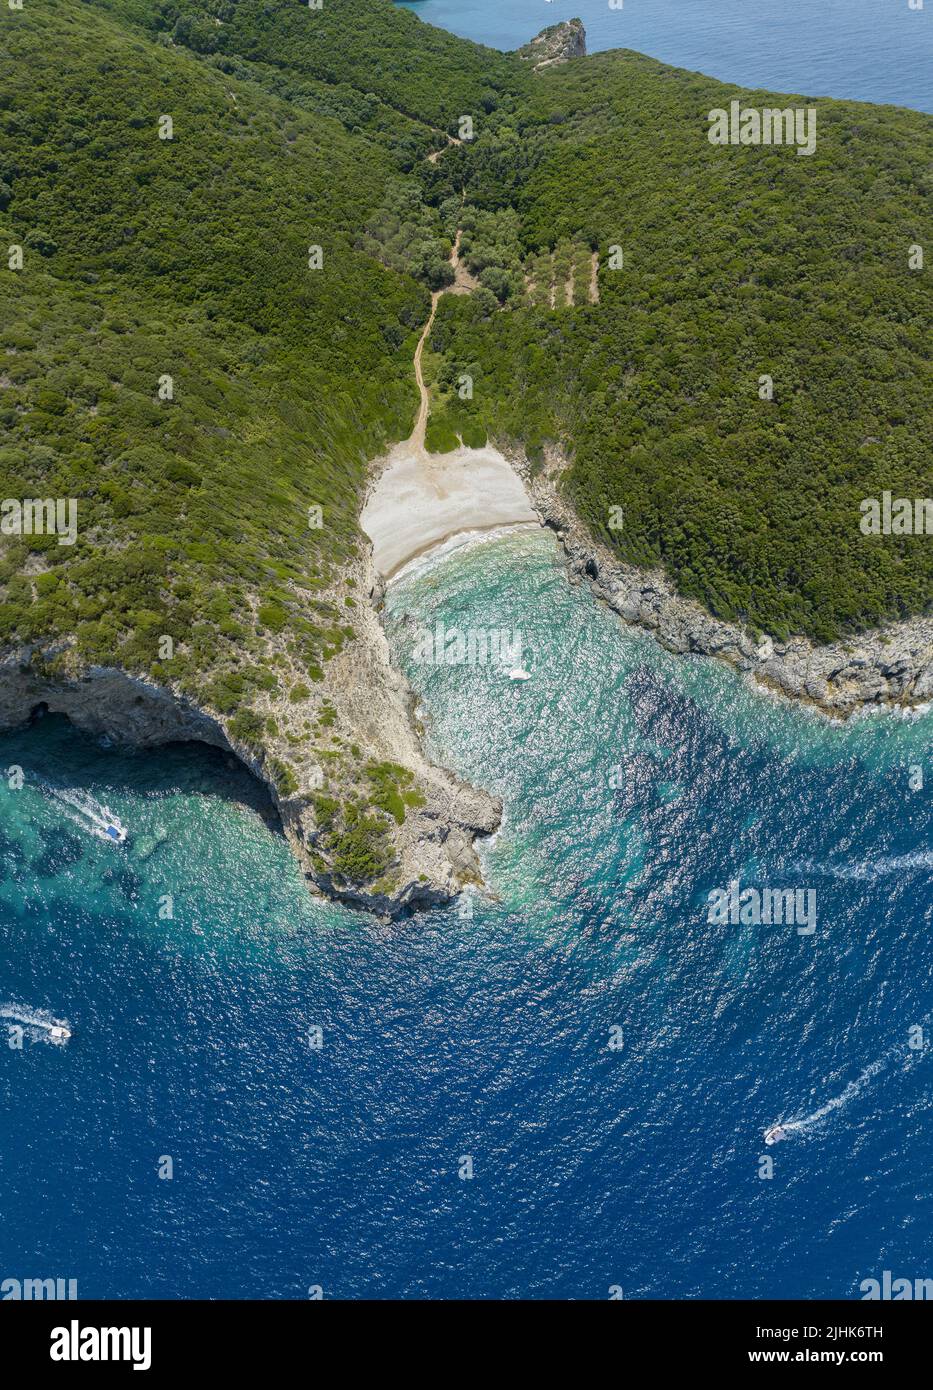 Vista aérea de la playa Dimitri Eliodoro, en la isla de Corfú. Grecia. Cerca de la única playa doble de Limni. Kerkyra Foto de stock